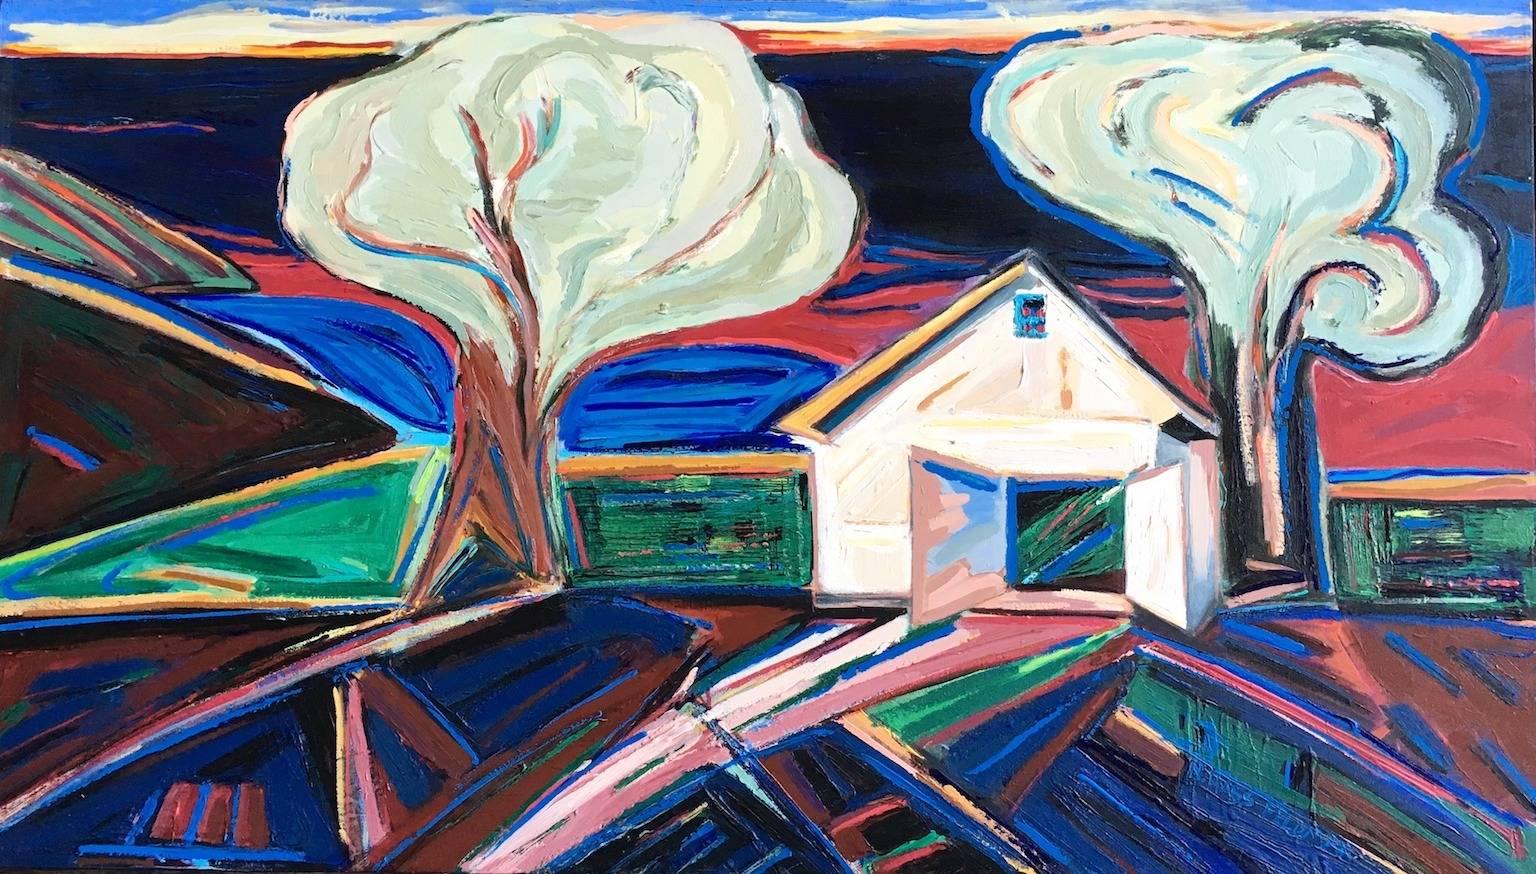 "Boat House", expressionniste, paysage, bleus, verts, rouges, peinture acrylique - Painting de Nan Hass Feldman